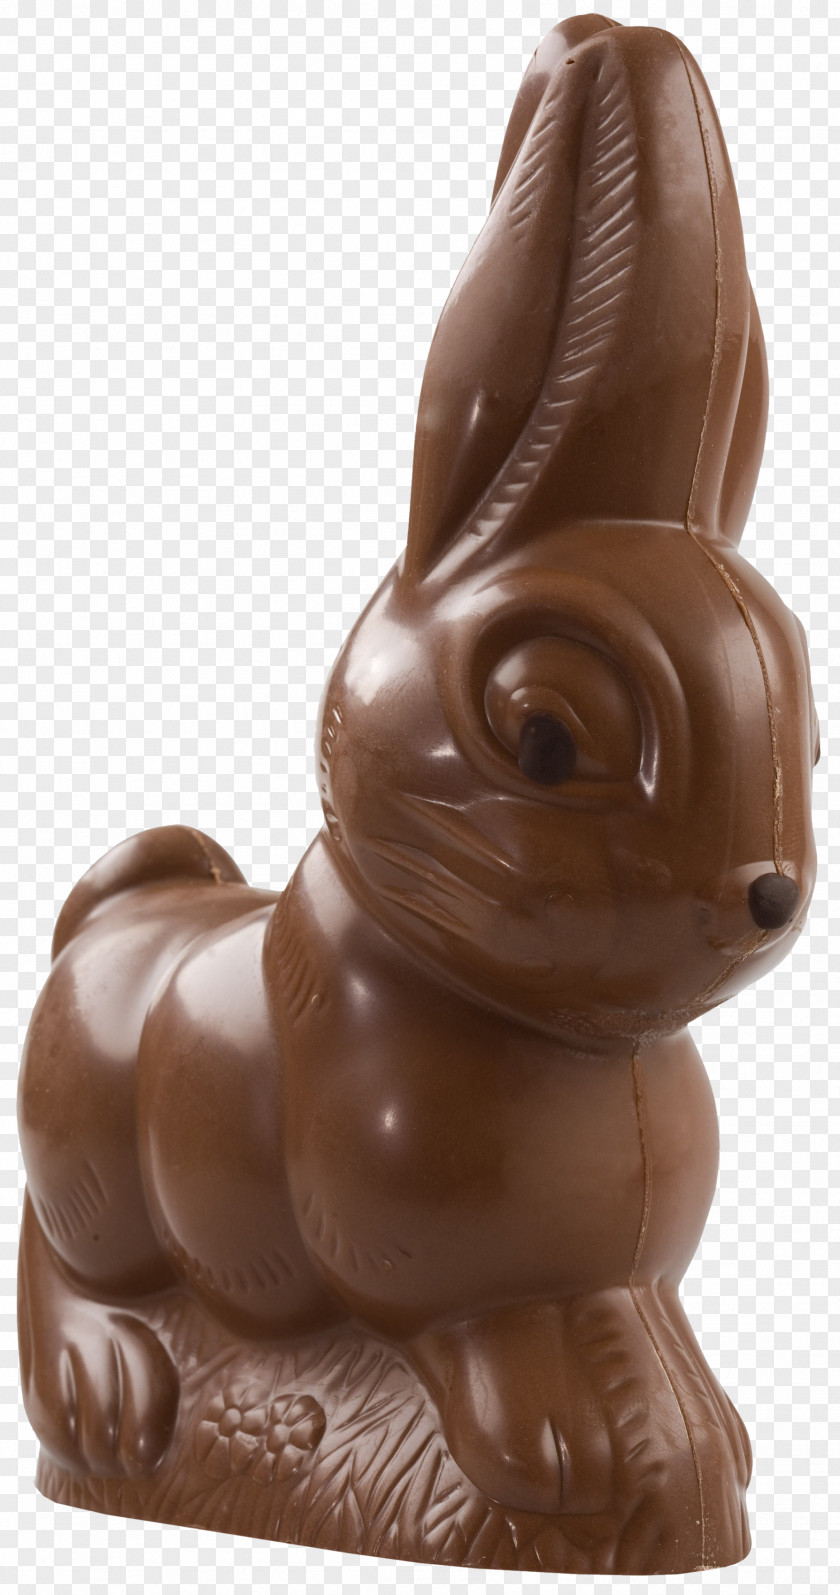 Chocolate Easter Bunny Egg Christmas PNG